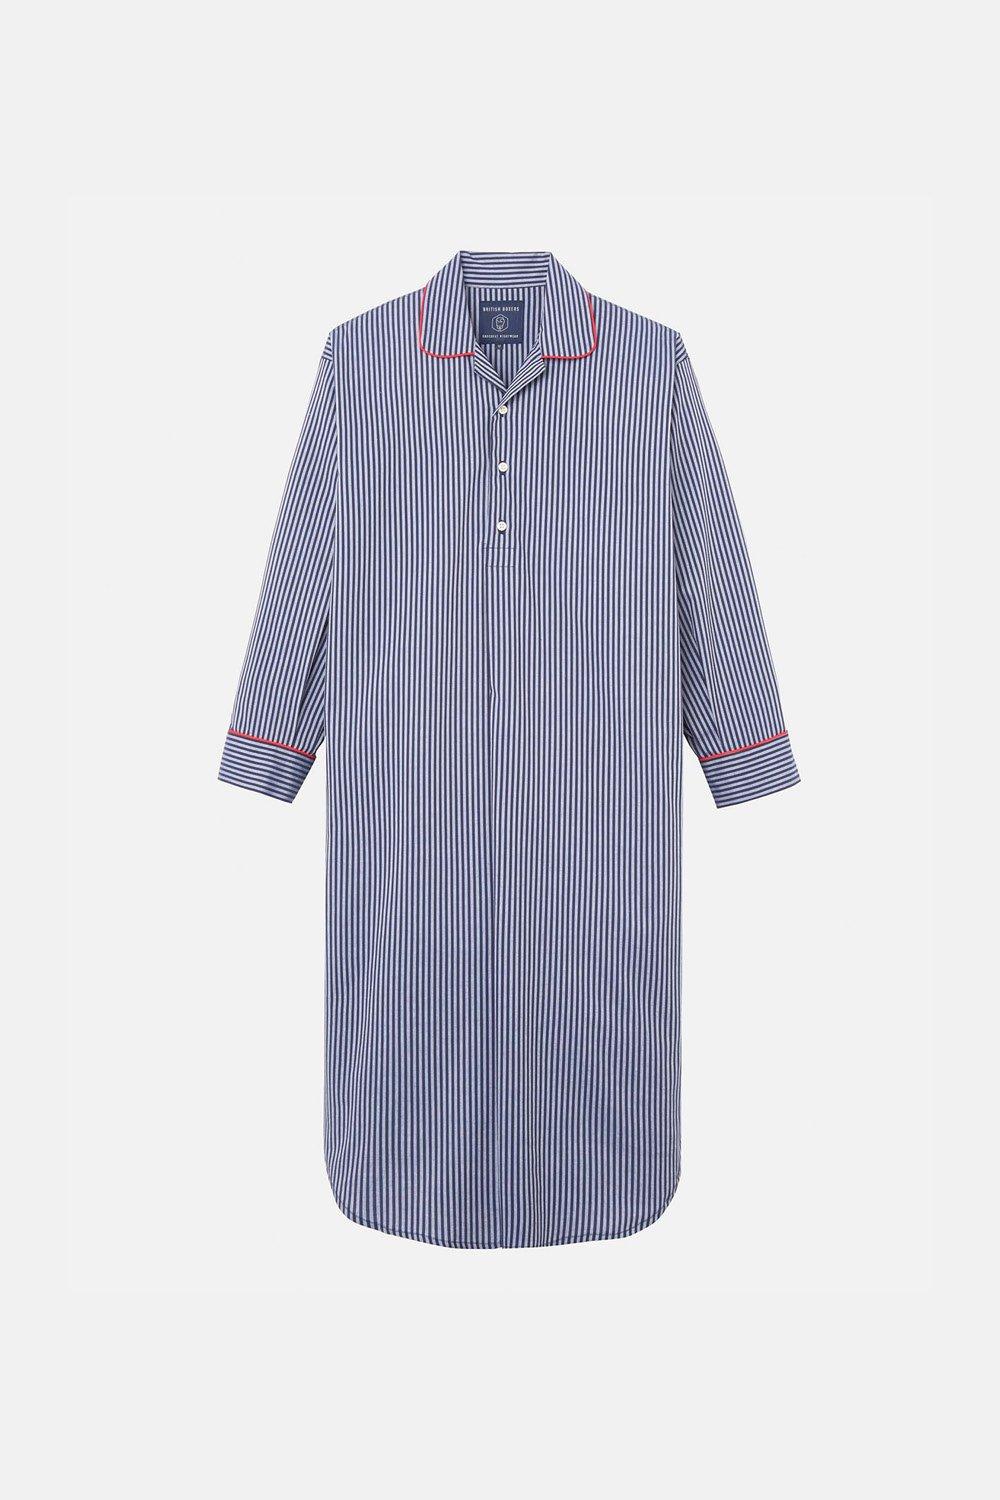 Winchester Stripe Crisp Cotton Nightshirt